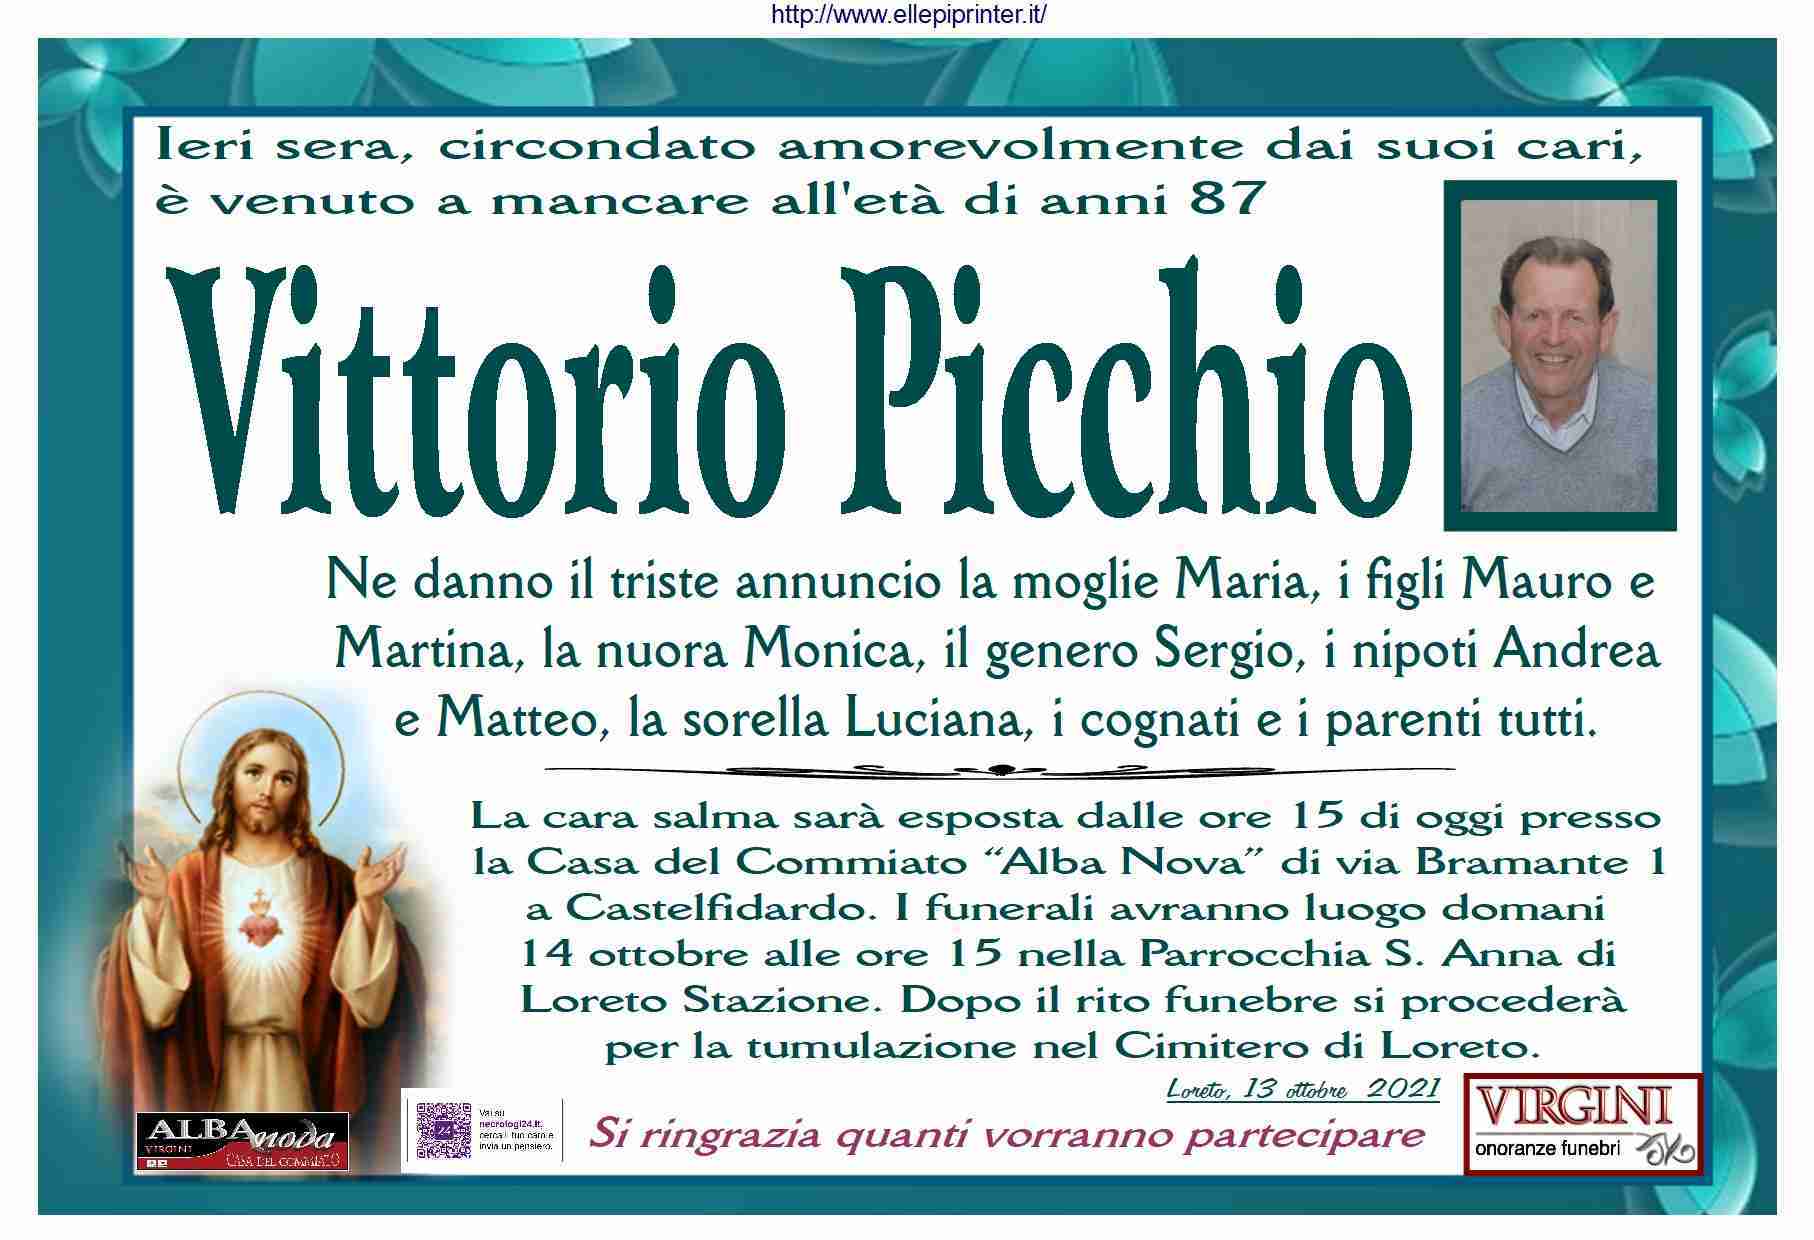 Vittorio Picchio